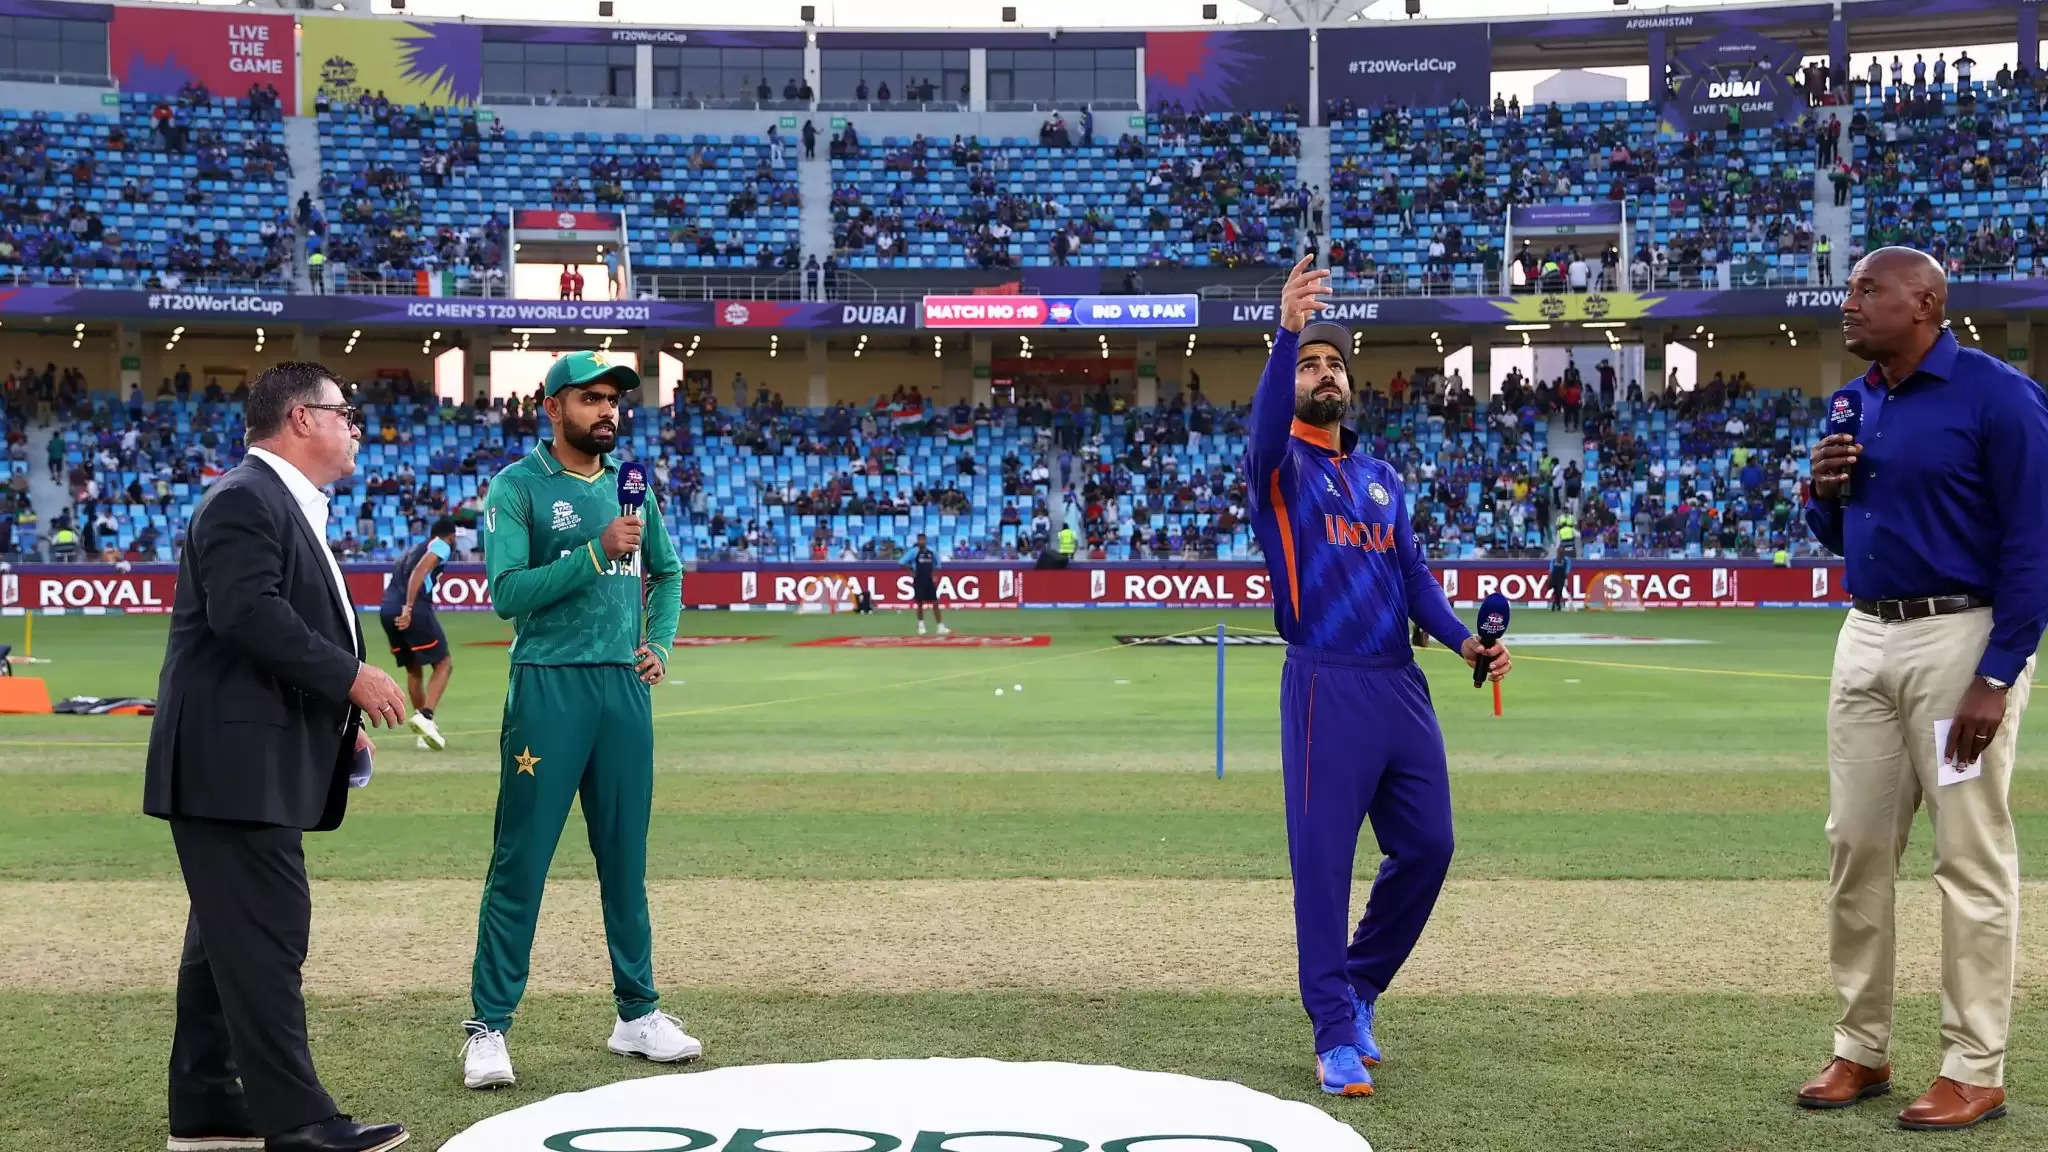 T20 World Cup: IND V PAK – பாகிஸ்தான் 10 விக்கெட்டுகள் வித்தியாசத்தில் அபார வெற்றி பெற்றது